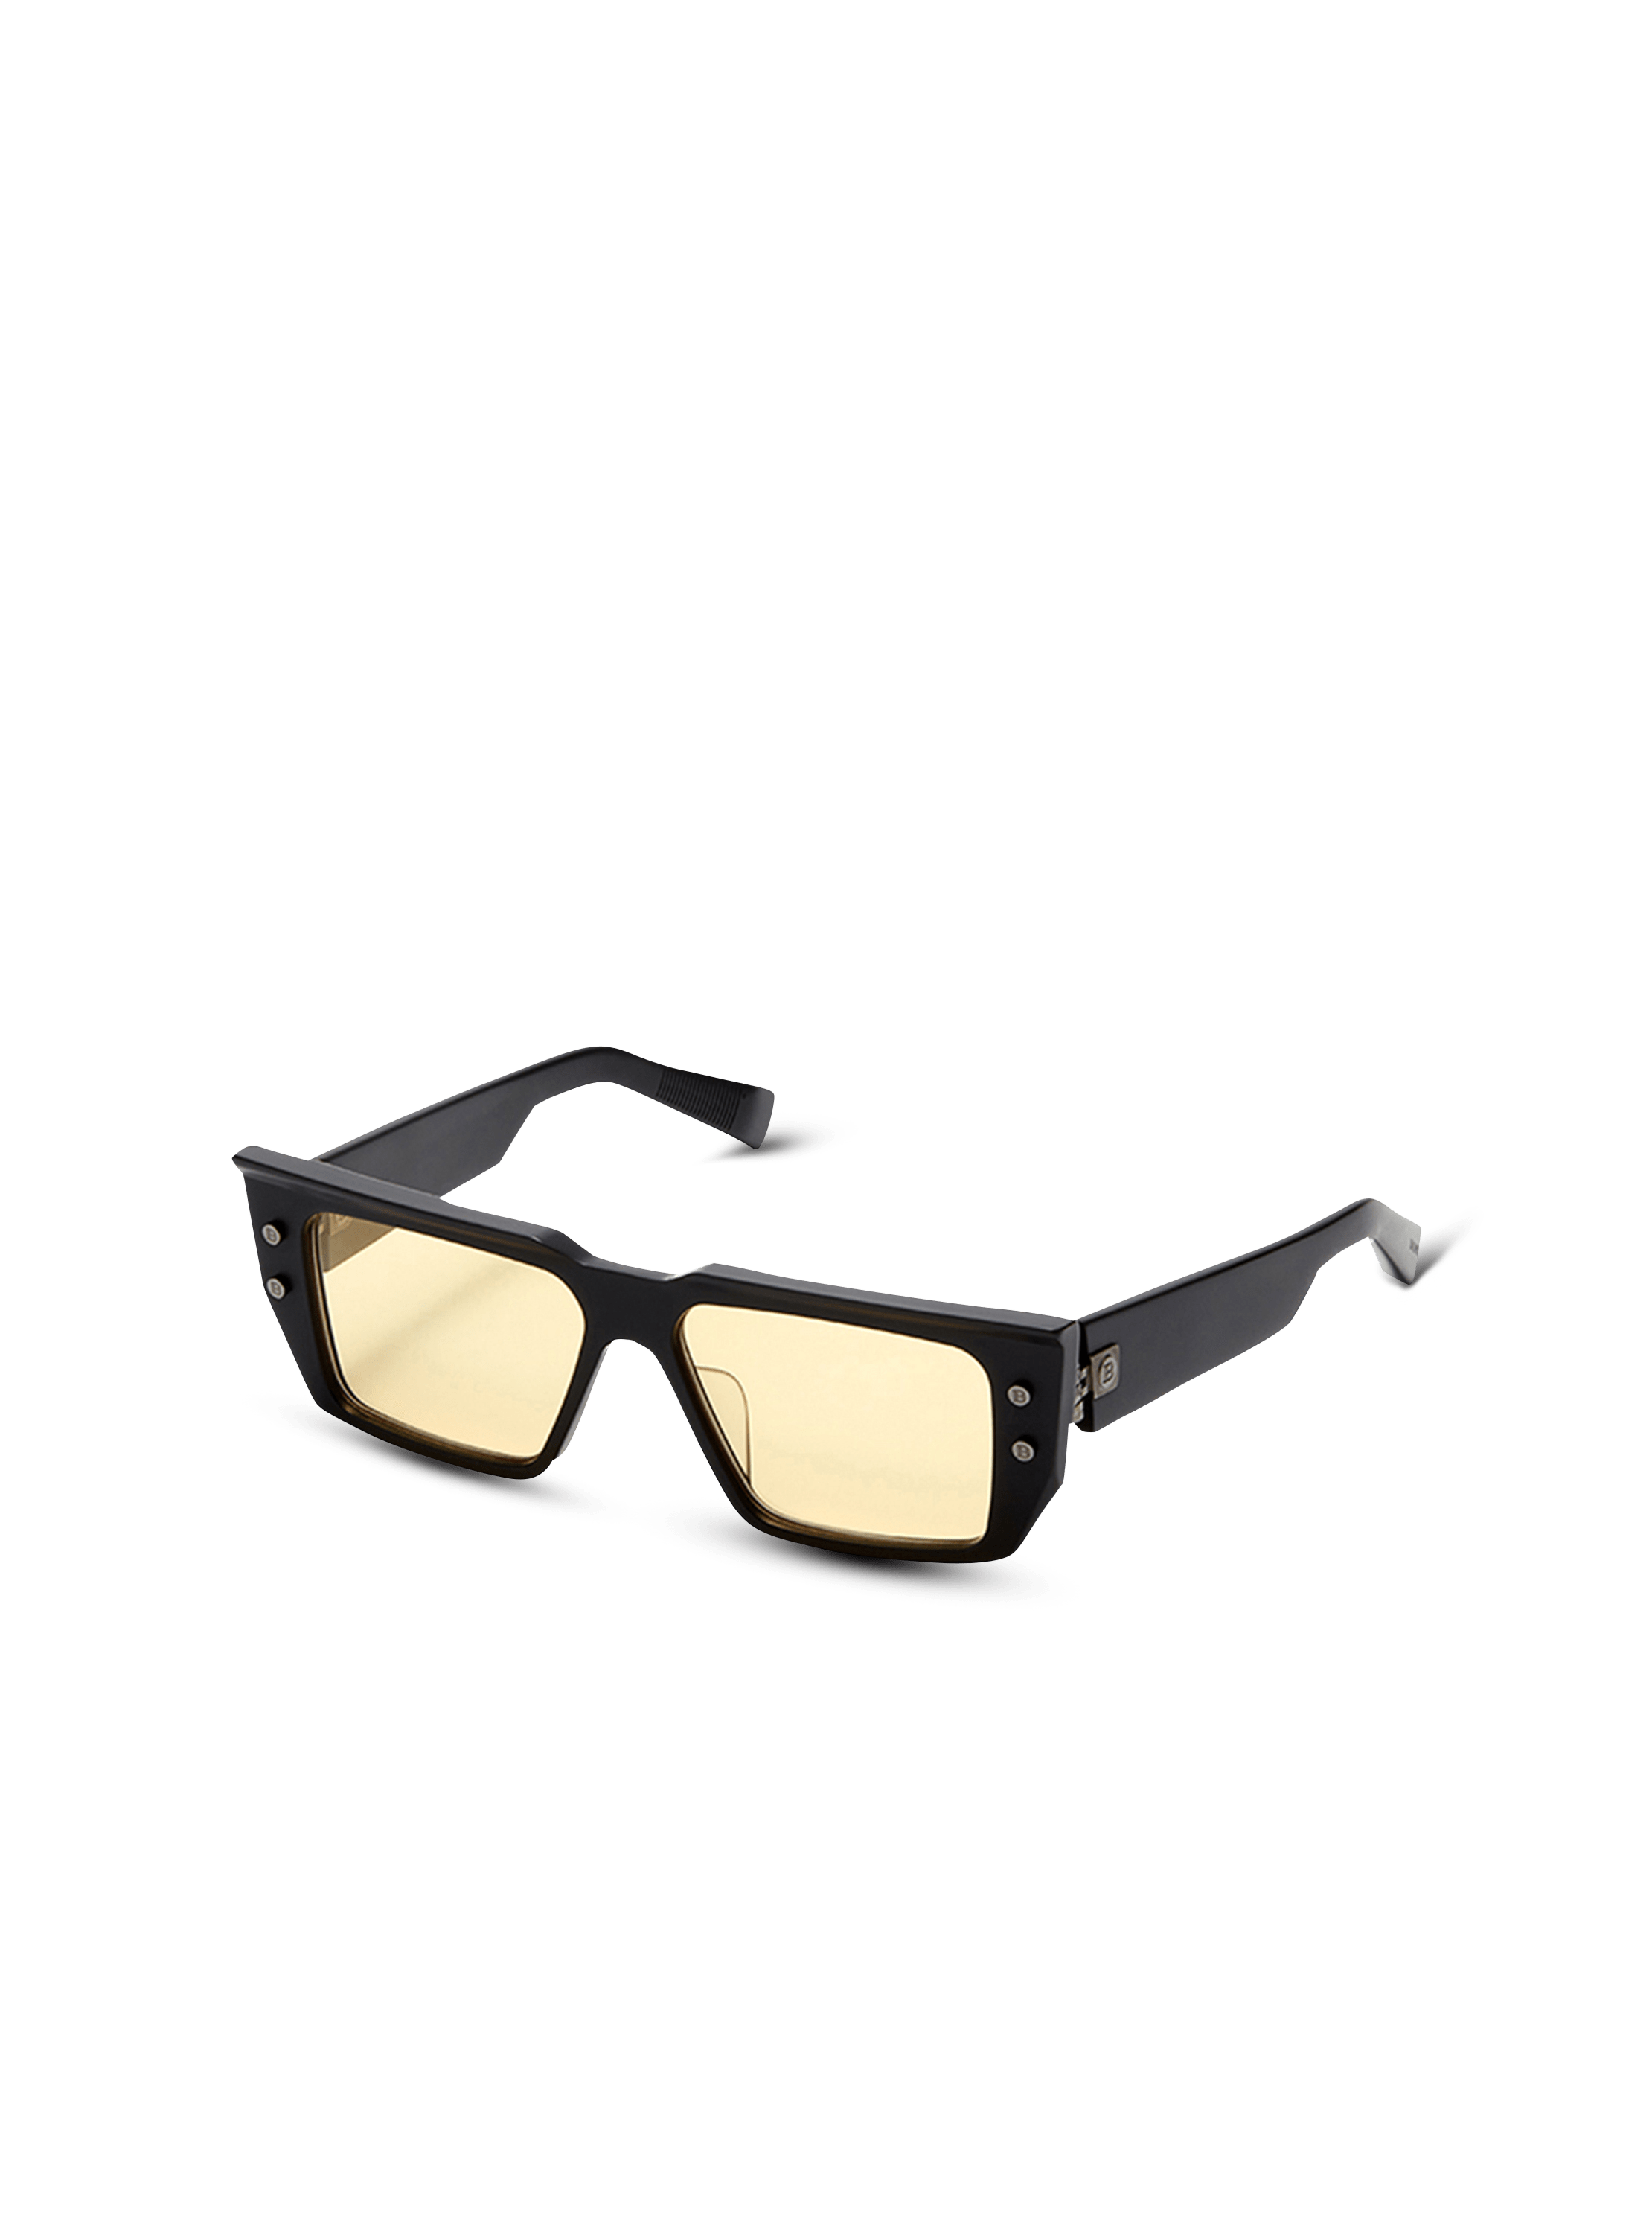 Balmain Sunglasses Square - B-VI Black/Gold - E35 Shop